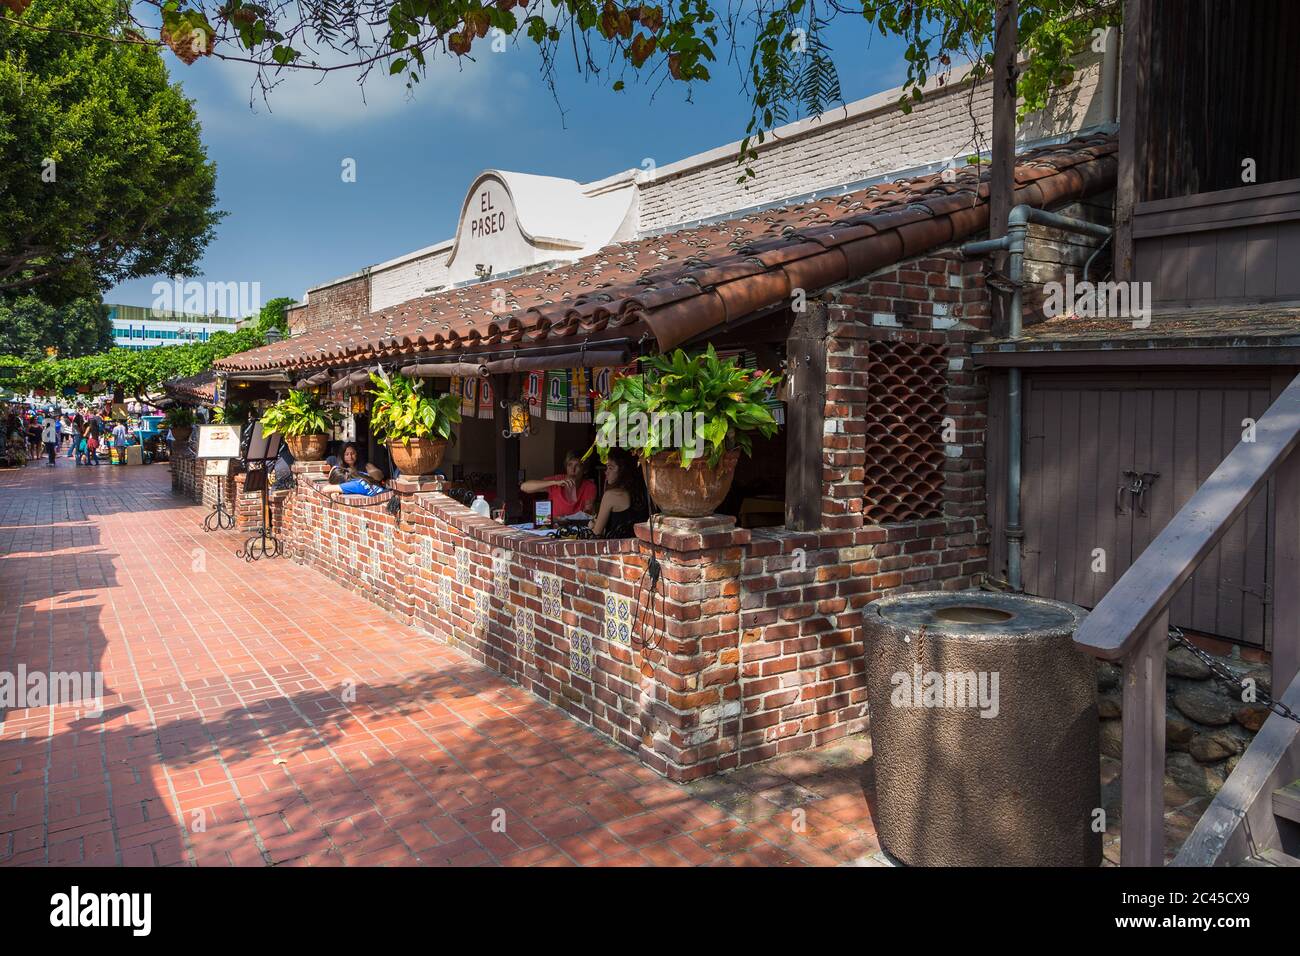 Los Angeles, California, USA- 11 June 2015: View of the restaurant El Paseo at Olvera Street, in El Pueblo de Los Angeles Historical Monument. Stock Photo